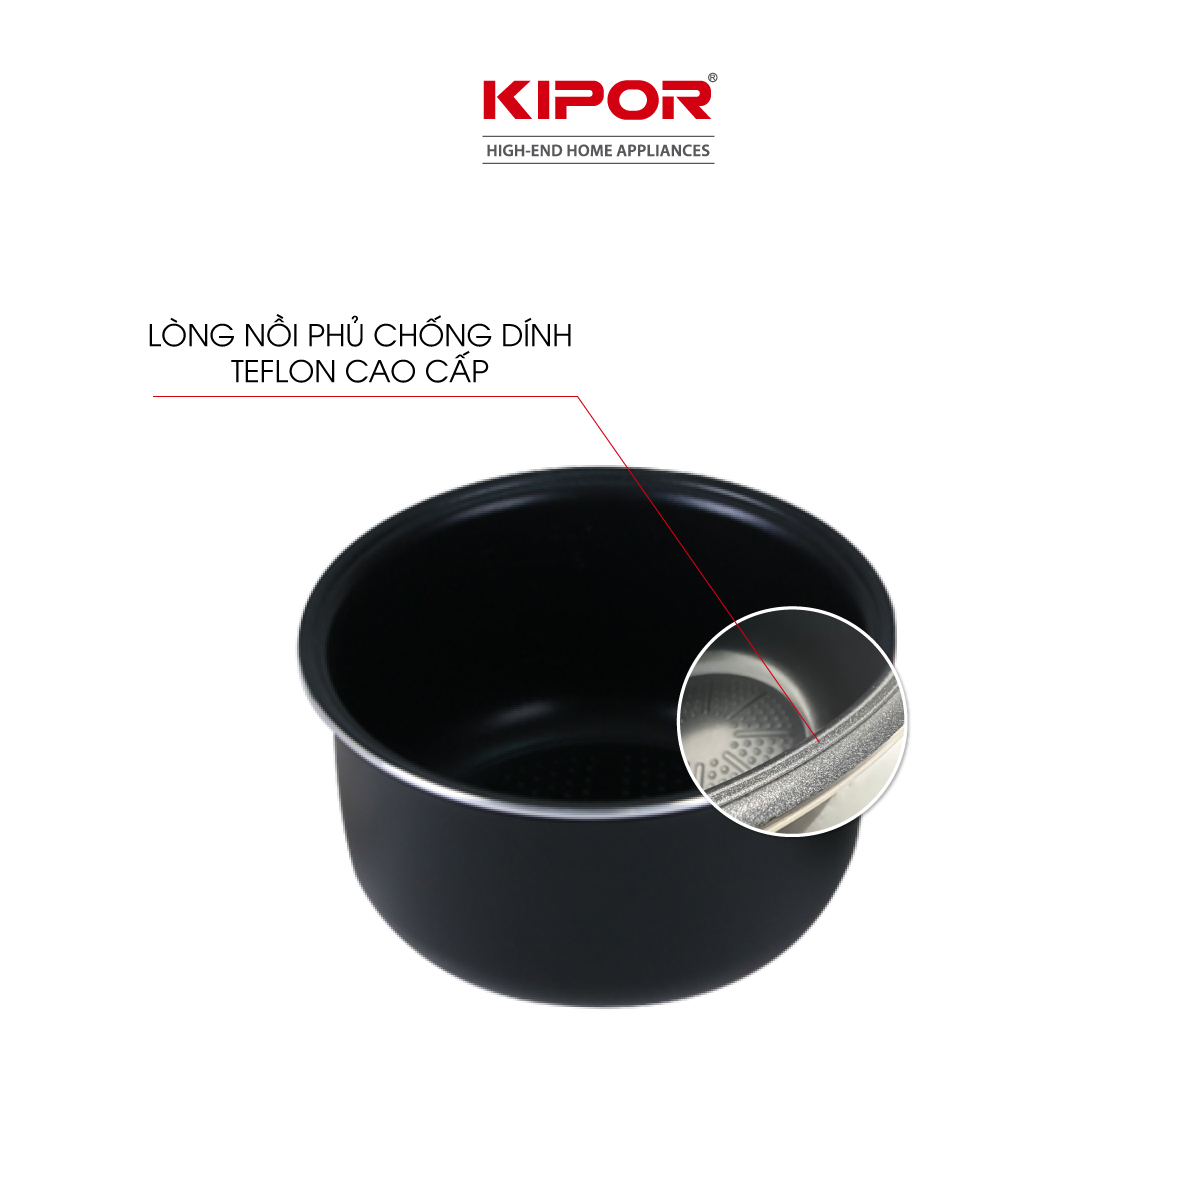 Nồi cơm điện KIPOR KP-N1512 - 1.2L - Lớp chống dính TEFLON 5 lớp lòng nồi dầy 3mm nặng 690G toả nhiệt đều cho 2-3 người ăn - Hàng chính hãng